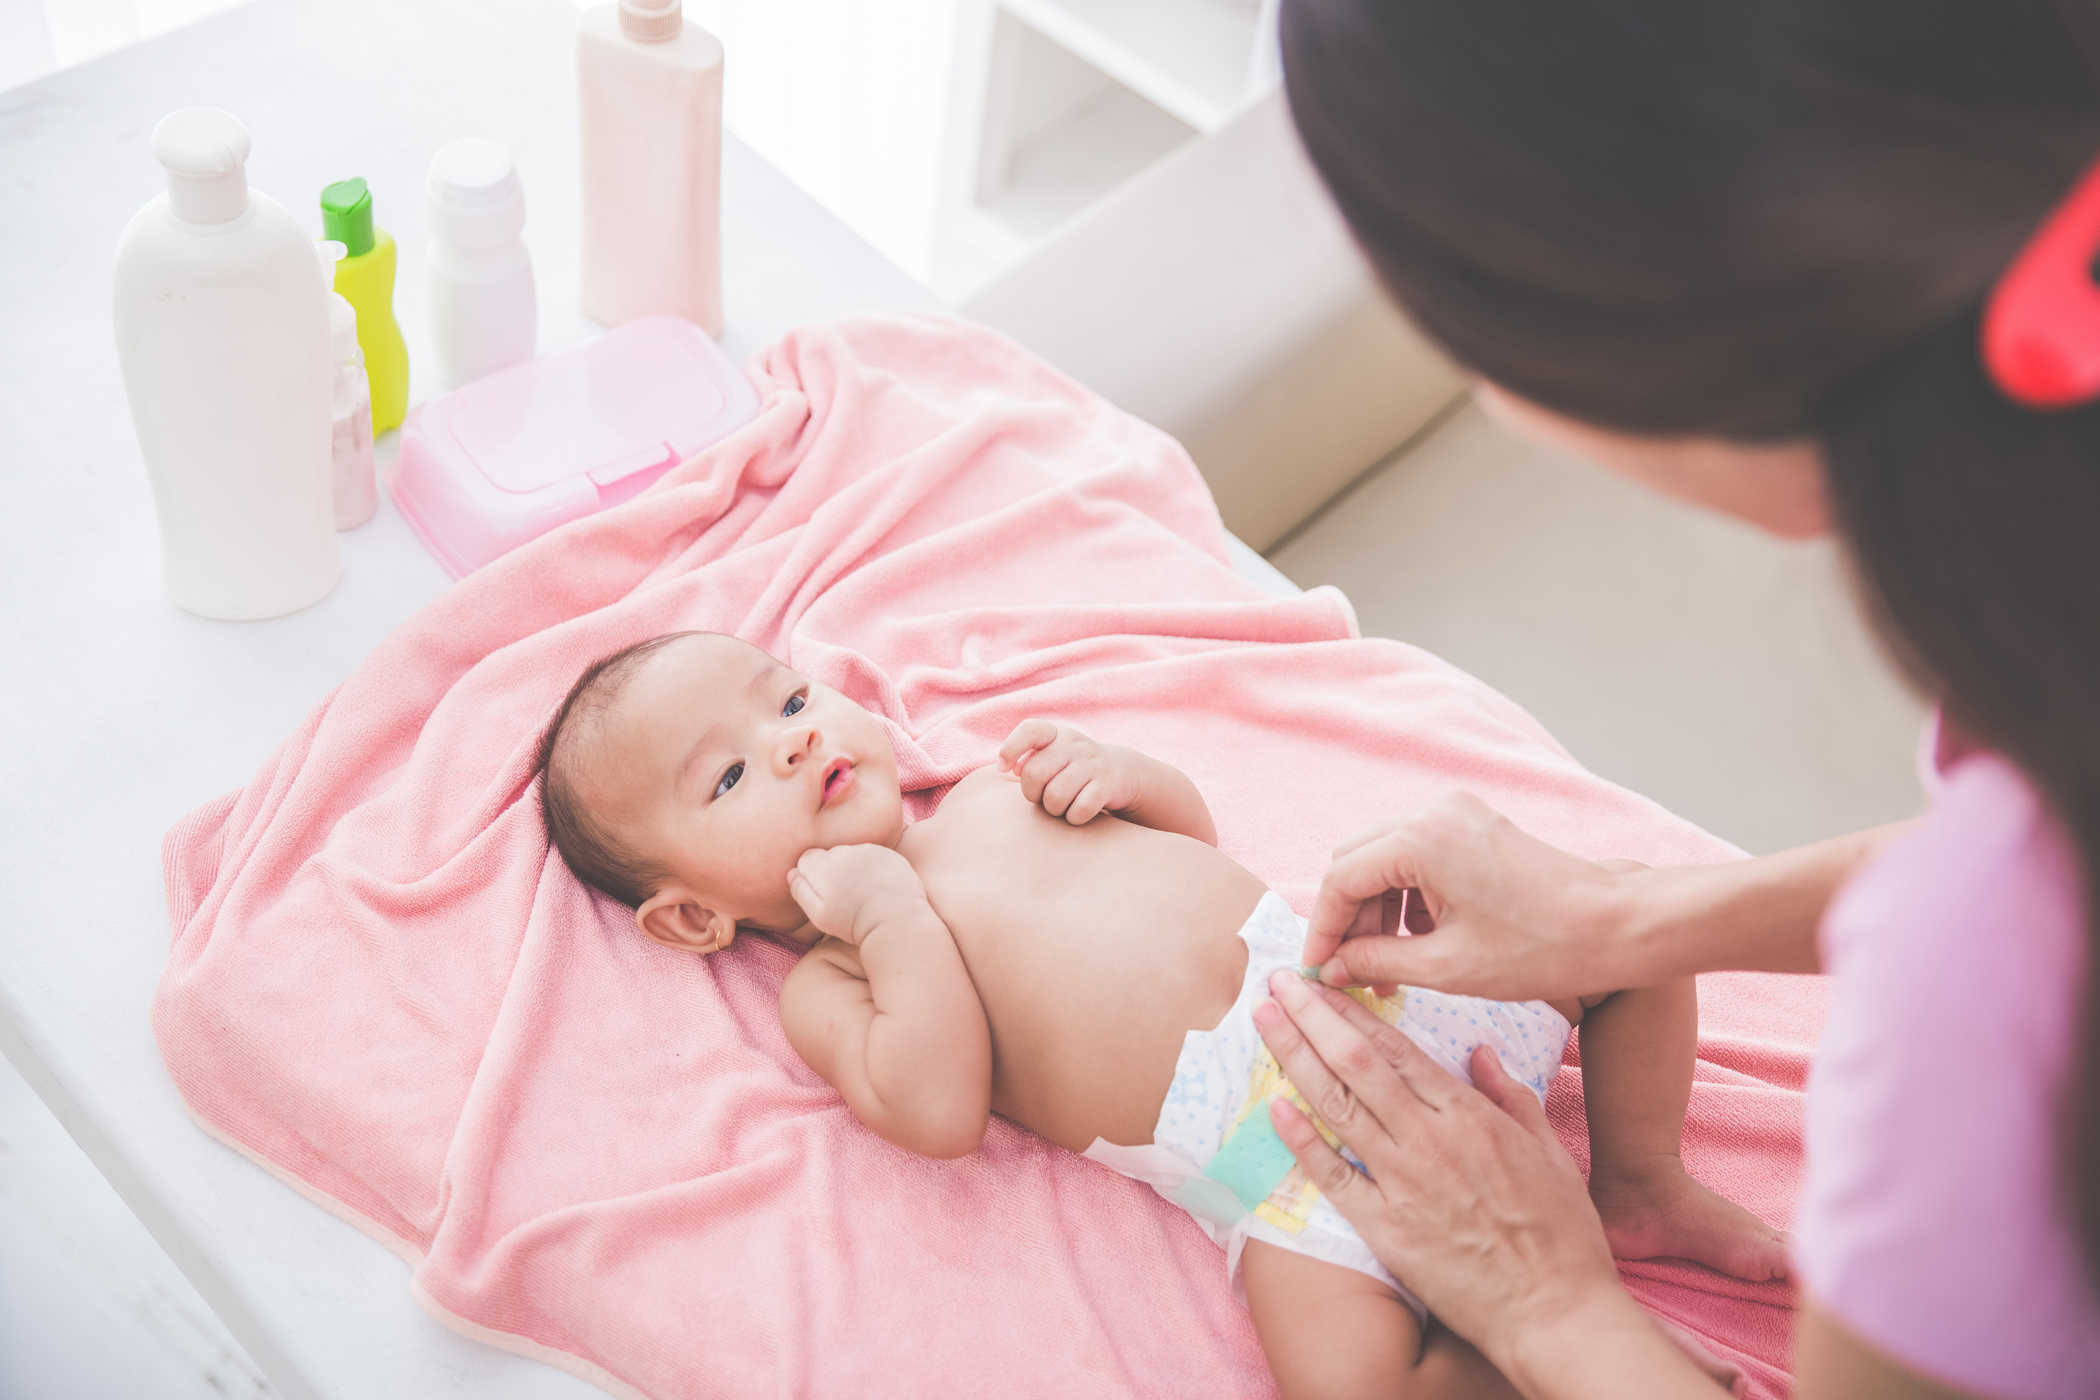 Cara Membersihkan Badan Bayi dari Kepala, Tali Pusat, Sampai Organ Intim